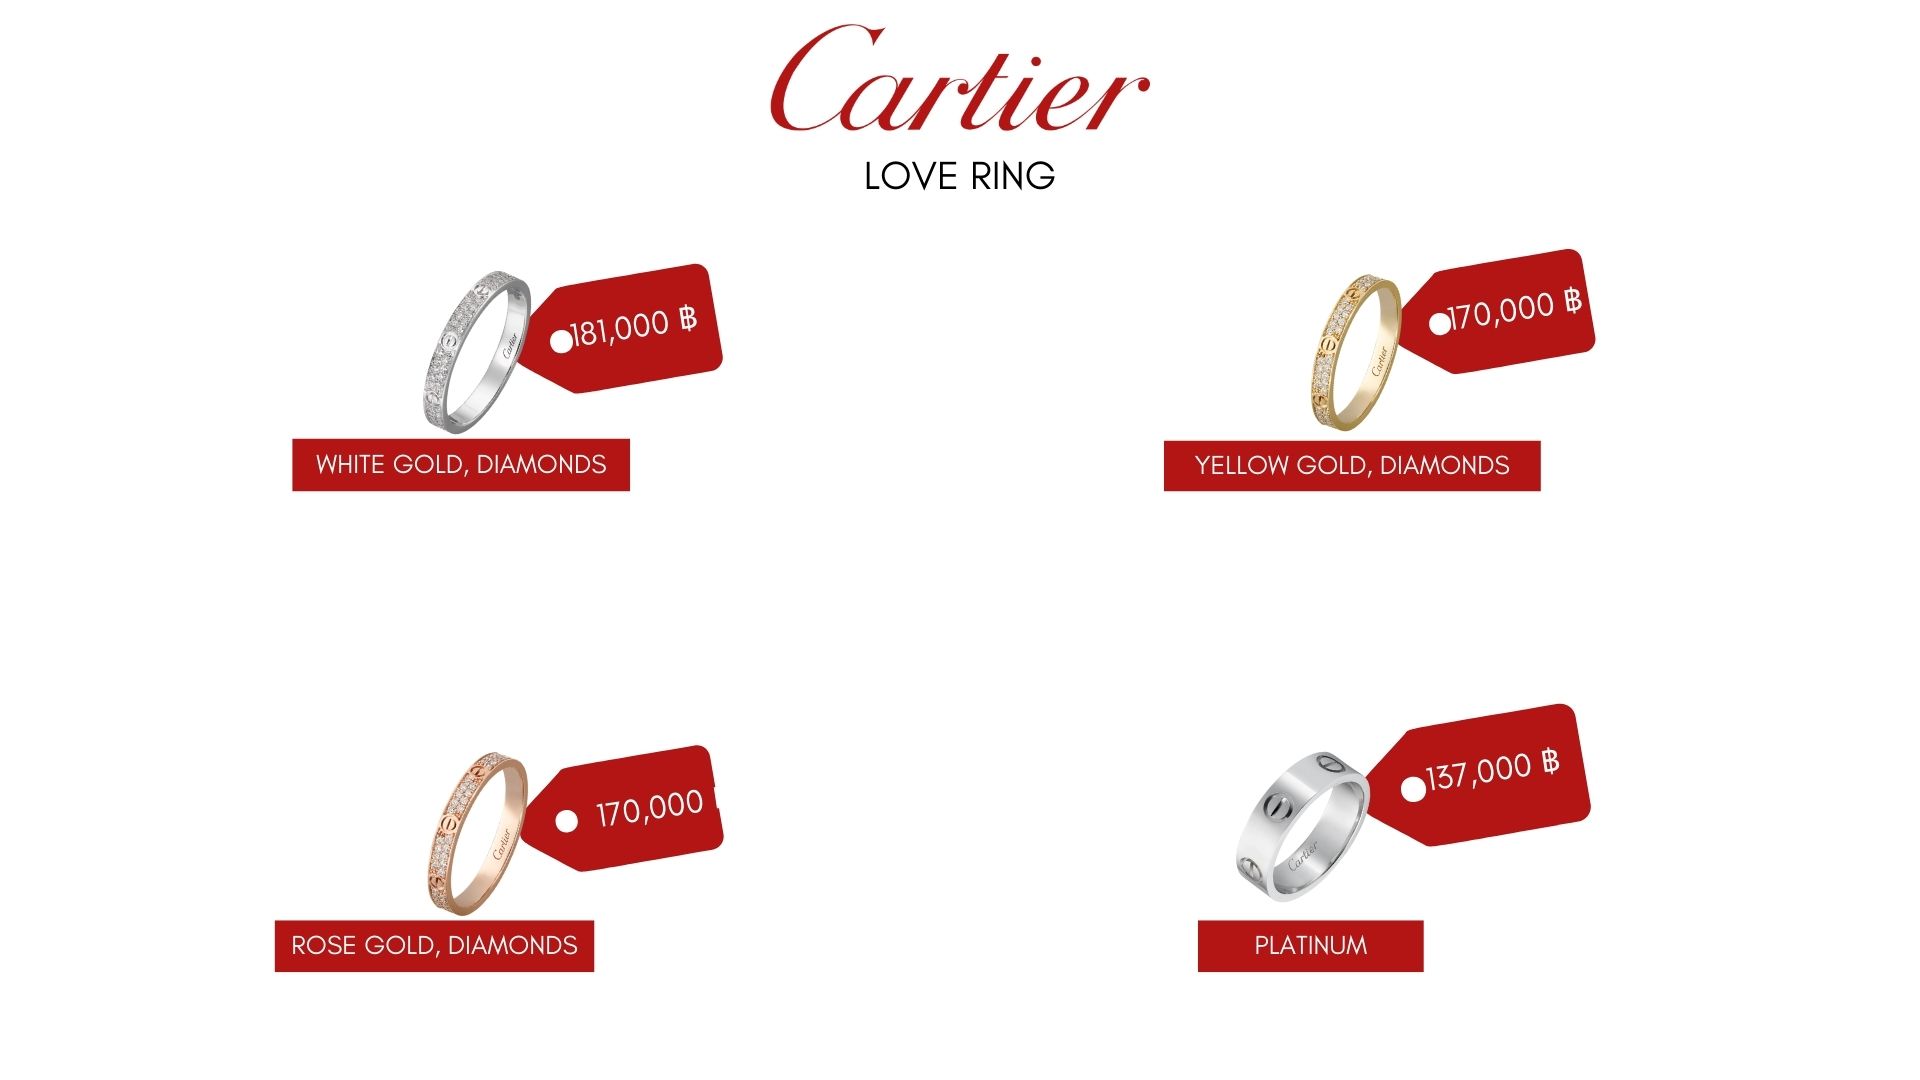 เทียบแหวน 2 รุ่น  Dior vs Cartier แหวน Cartier